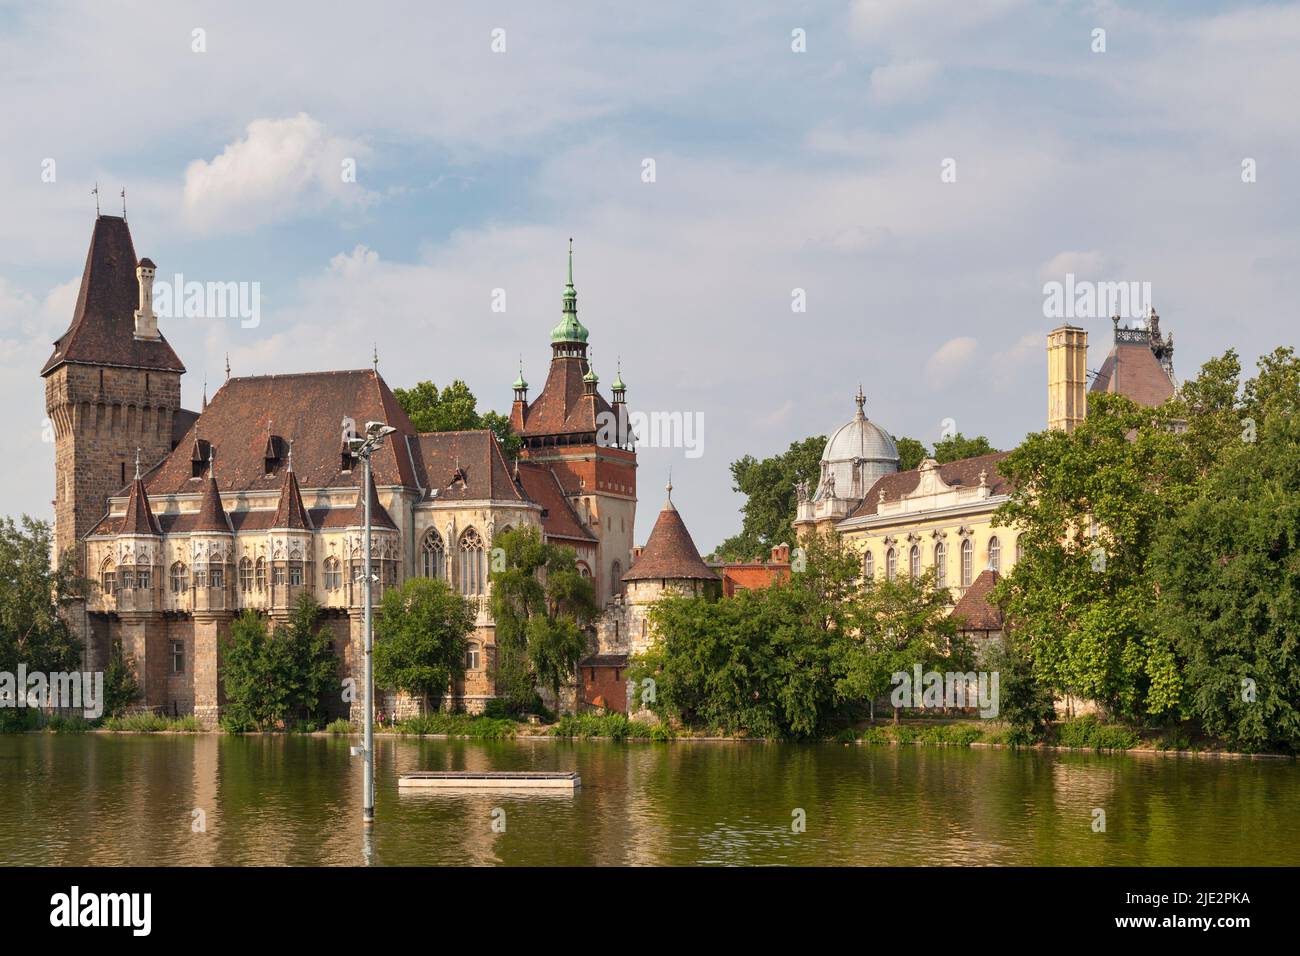 Budapest, Hongrie - 21 juin 2018 : le château de Vajdahunyad construit en 1896 dans le parc de la ville dans le cadre de l'exposition millénaire. Banque D'Images